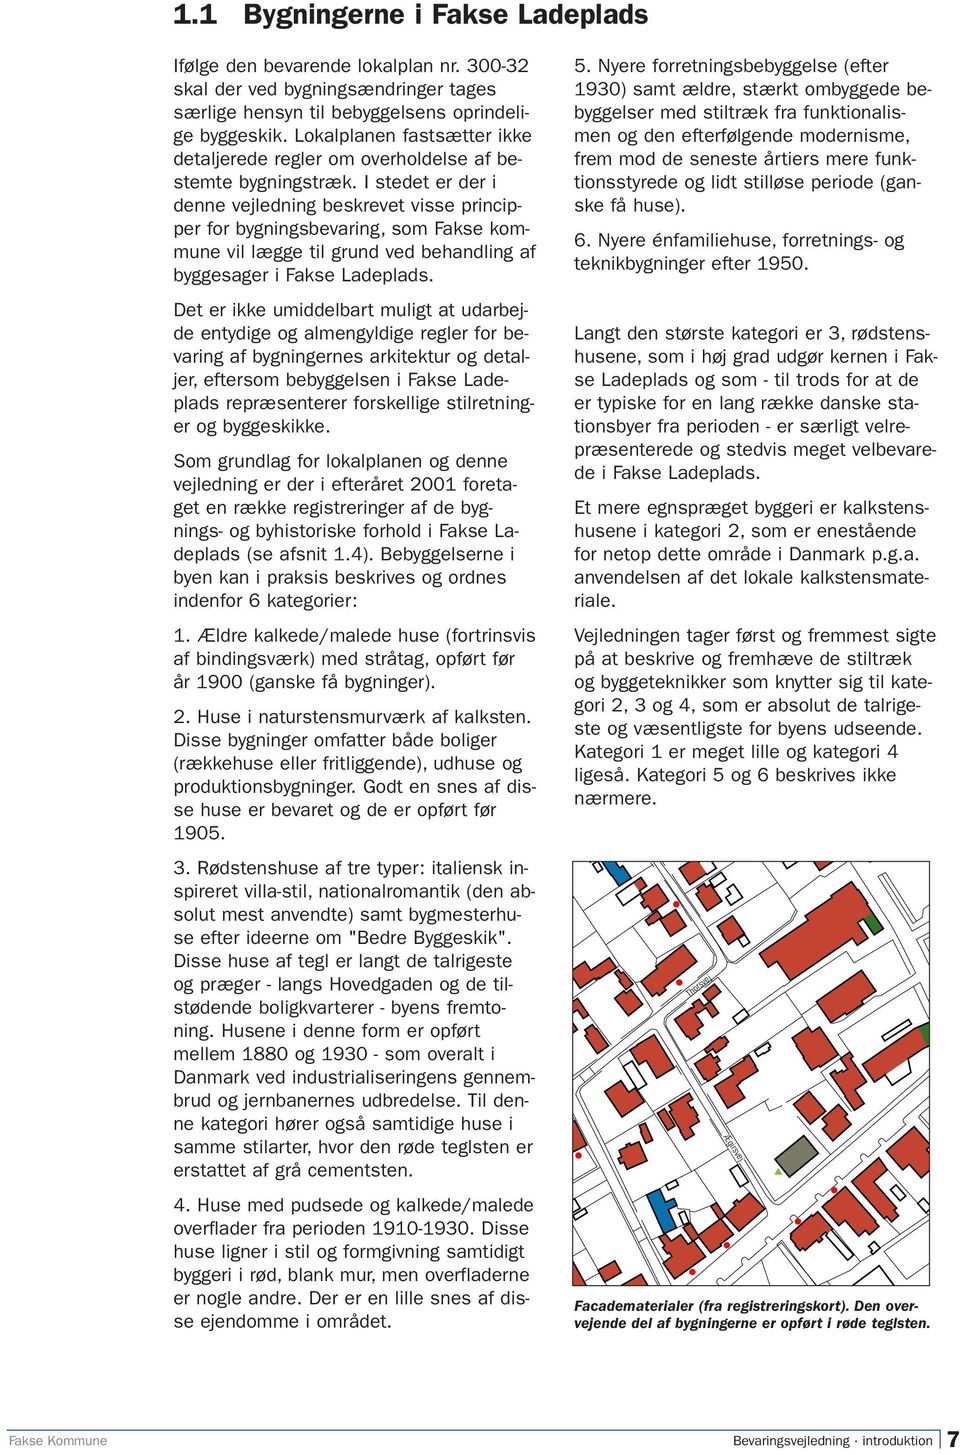 I stedet er der i denne vejledning beskrevet visse principper for bygningsbevaring, som Fakse kommune vil lægge til grund ved behandling af byggesager i Fakse Ladeplads.